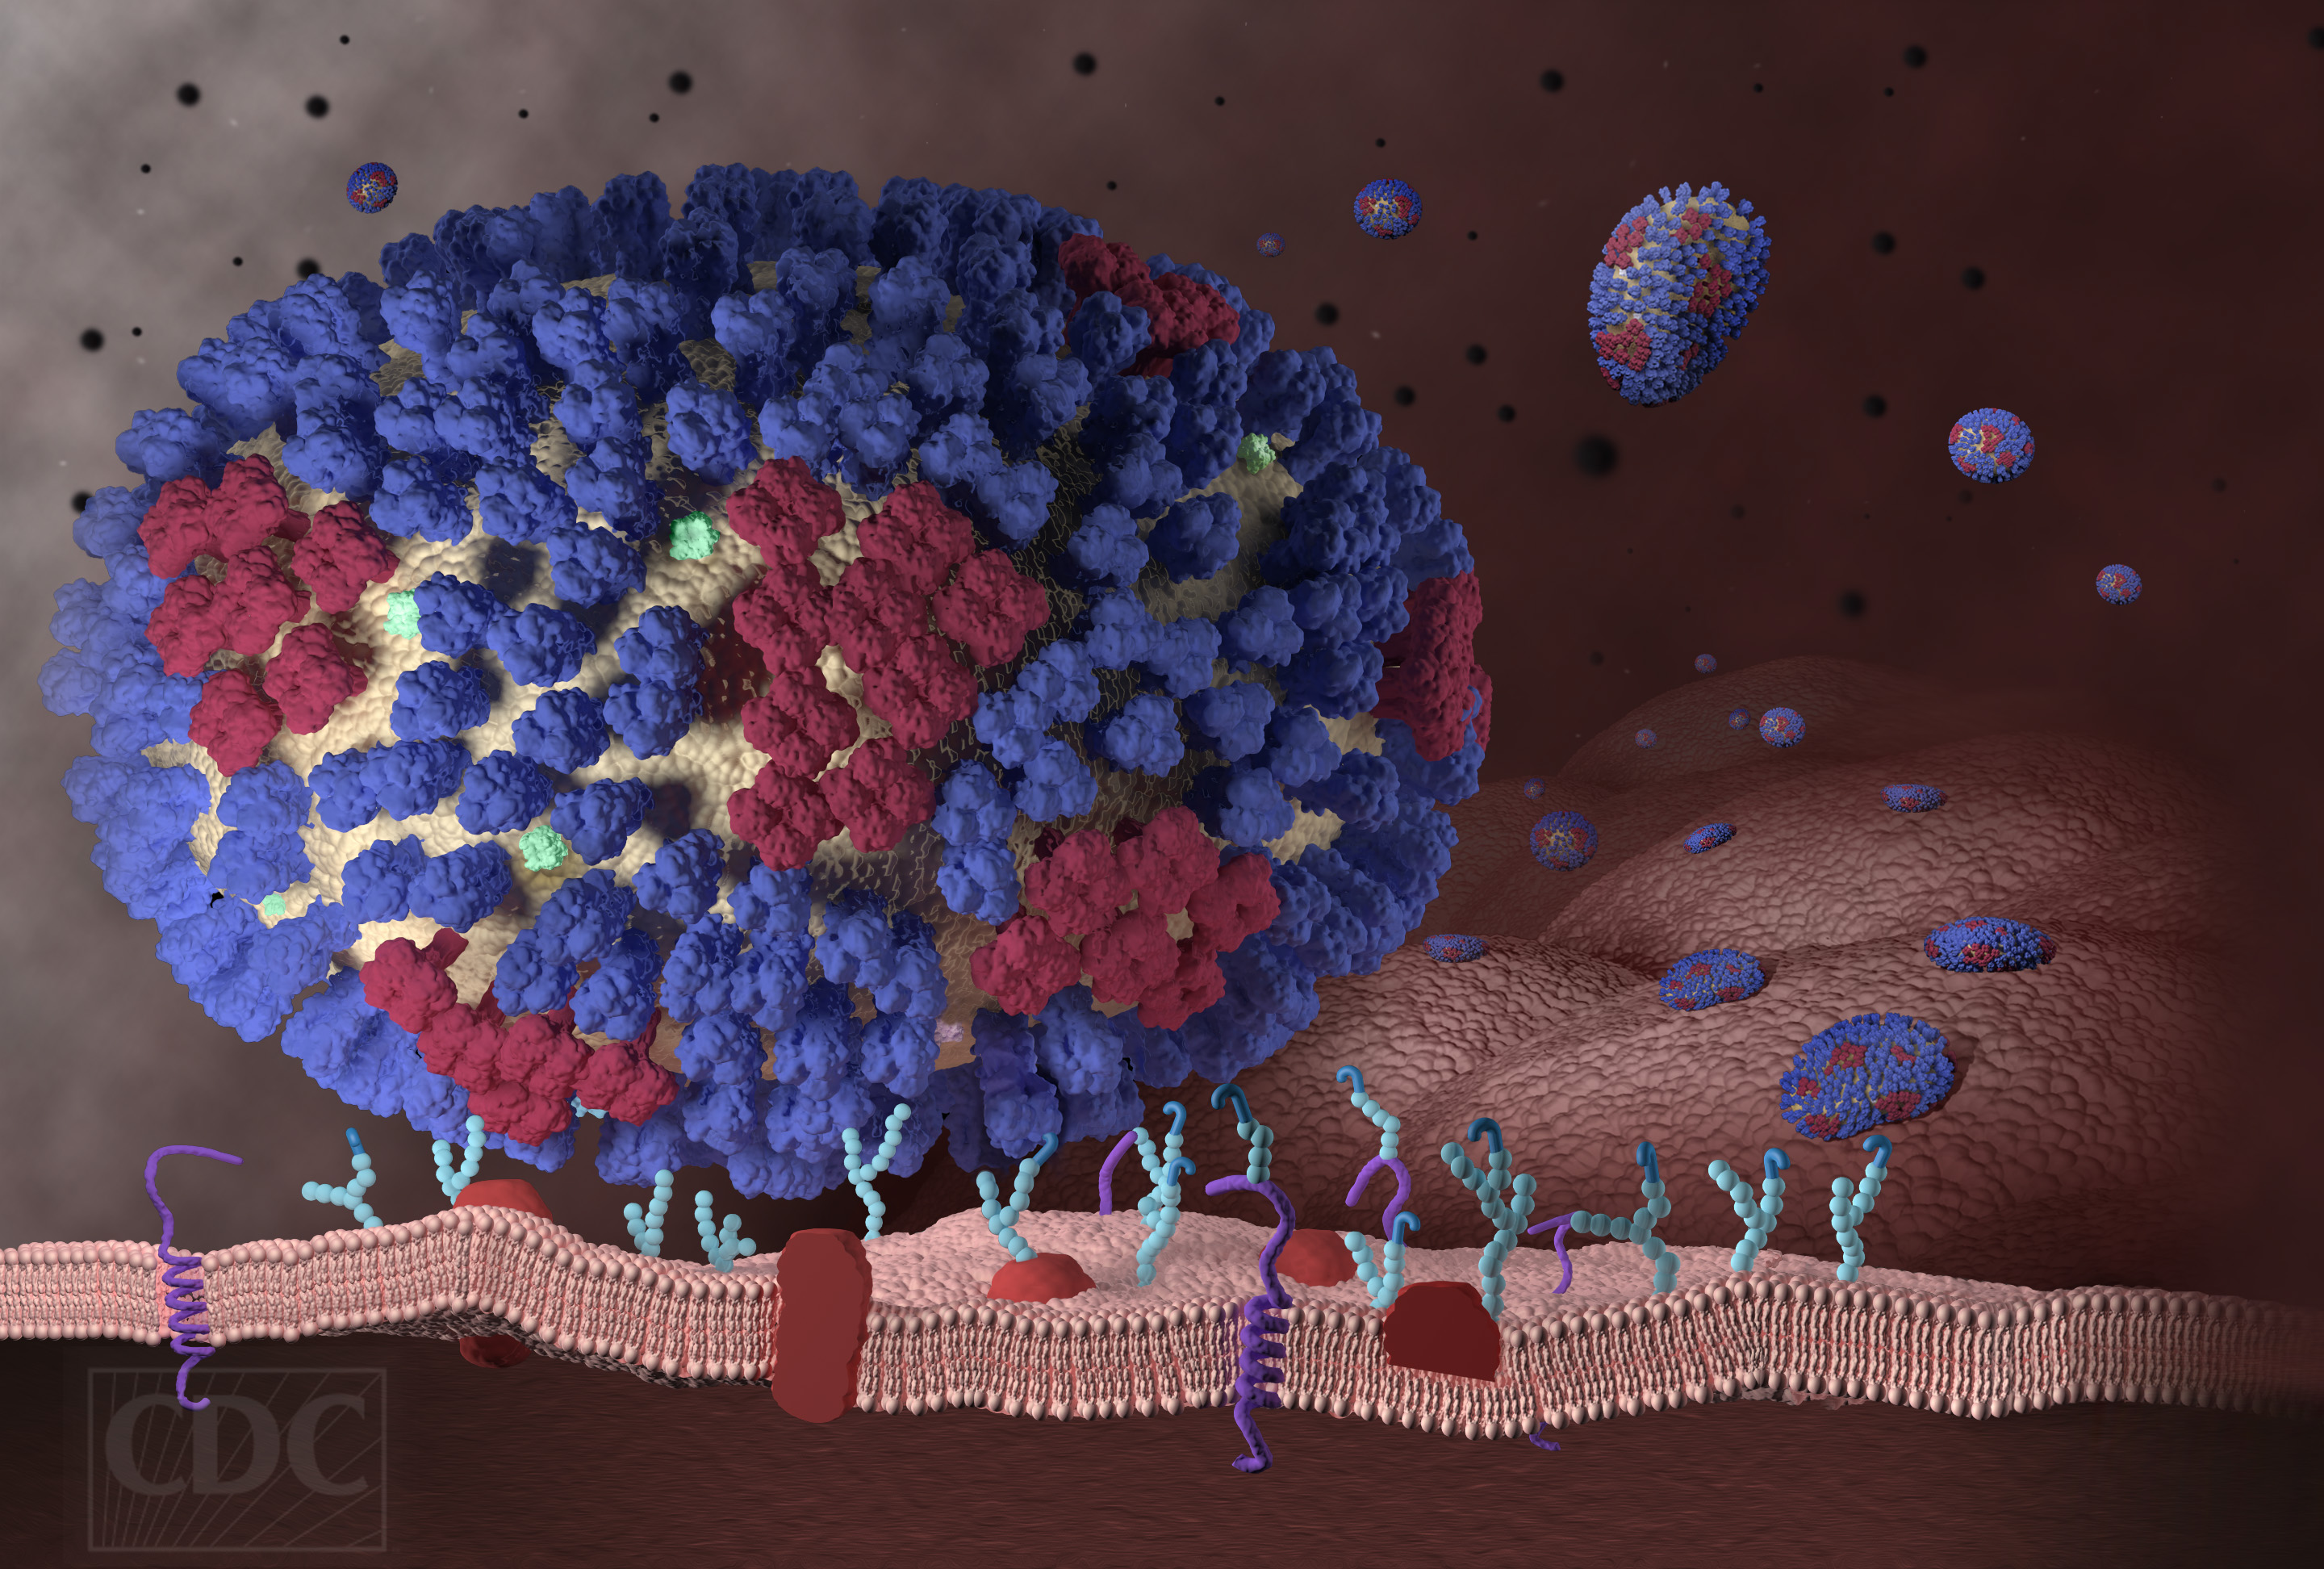 Z mnoha vyčnívajících struktur na povrch viru se ve stovkách exemplářů vyskytují molekuly hemaglutininu (modře) a neuraminidázy (fialově).  Každá z kopií se podobá hříbečku, který má hlavičku a nožku. Na změnách ve stavbě hlavičky proteinu (mutaci) z